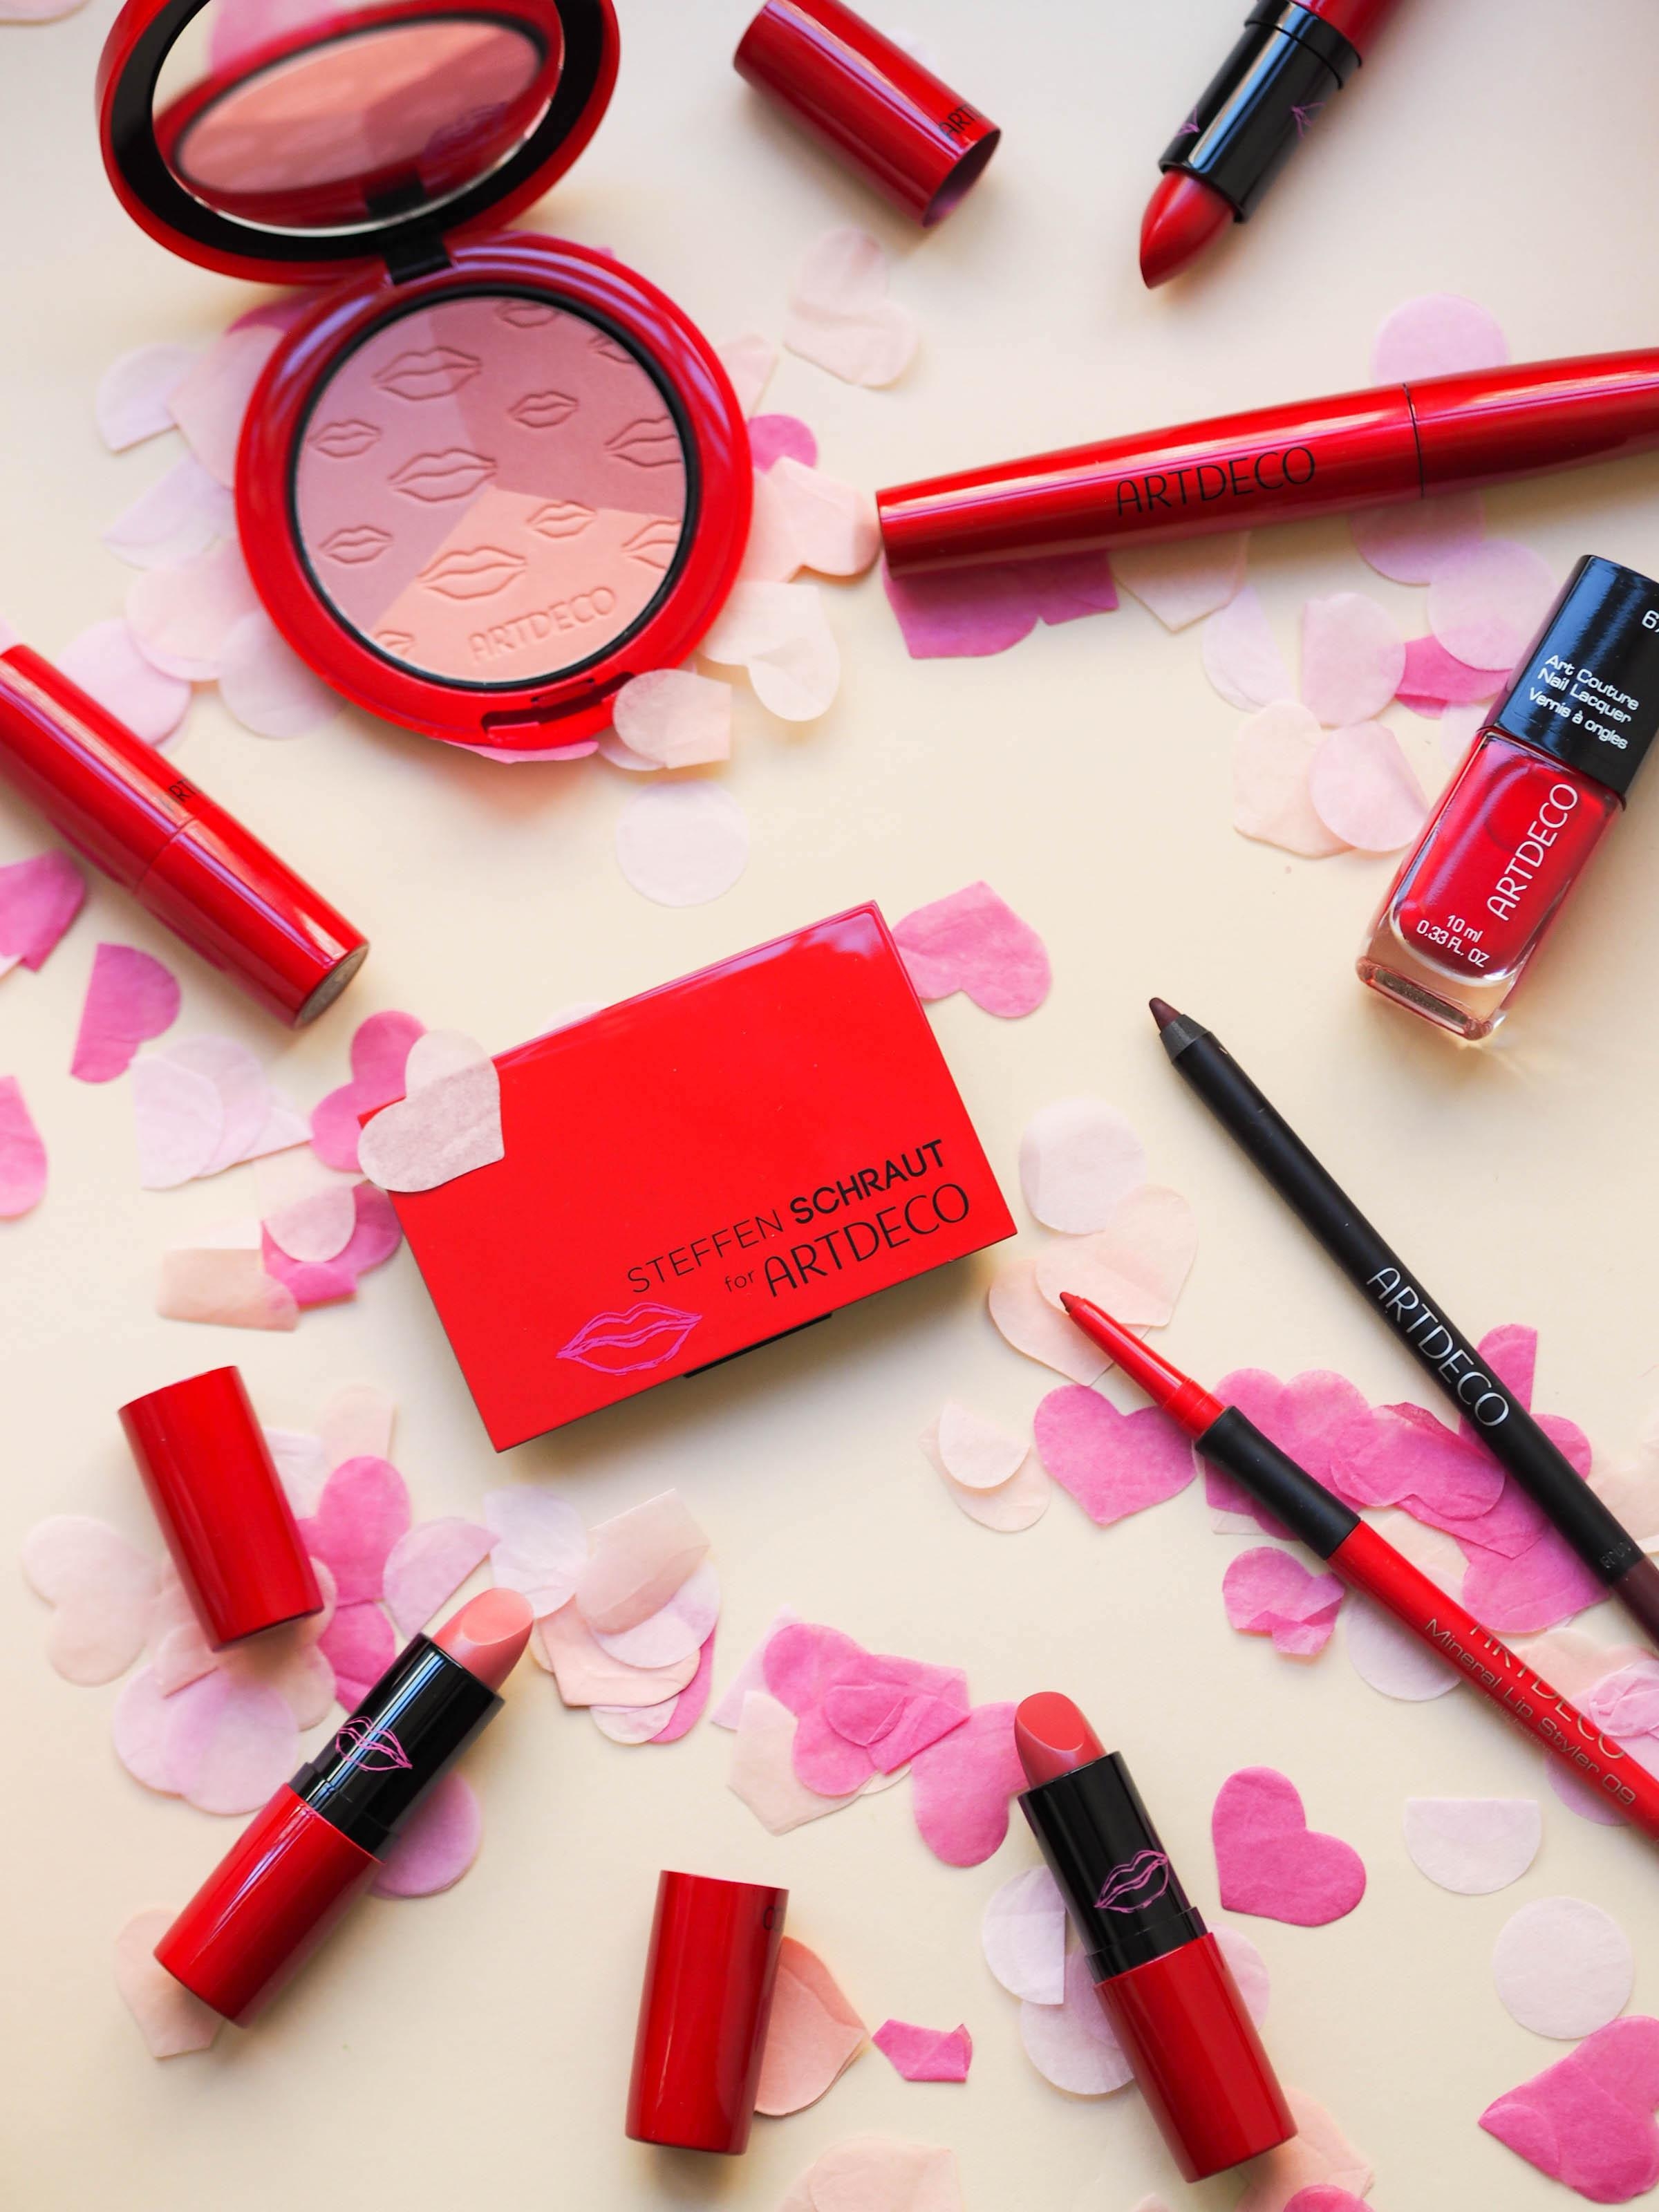 Wir setzen auf Rot mit #artdecocosmetics! Das Set für deinen Valentins-Look verlosen wir auch bei Insta #happyvalentine